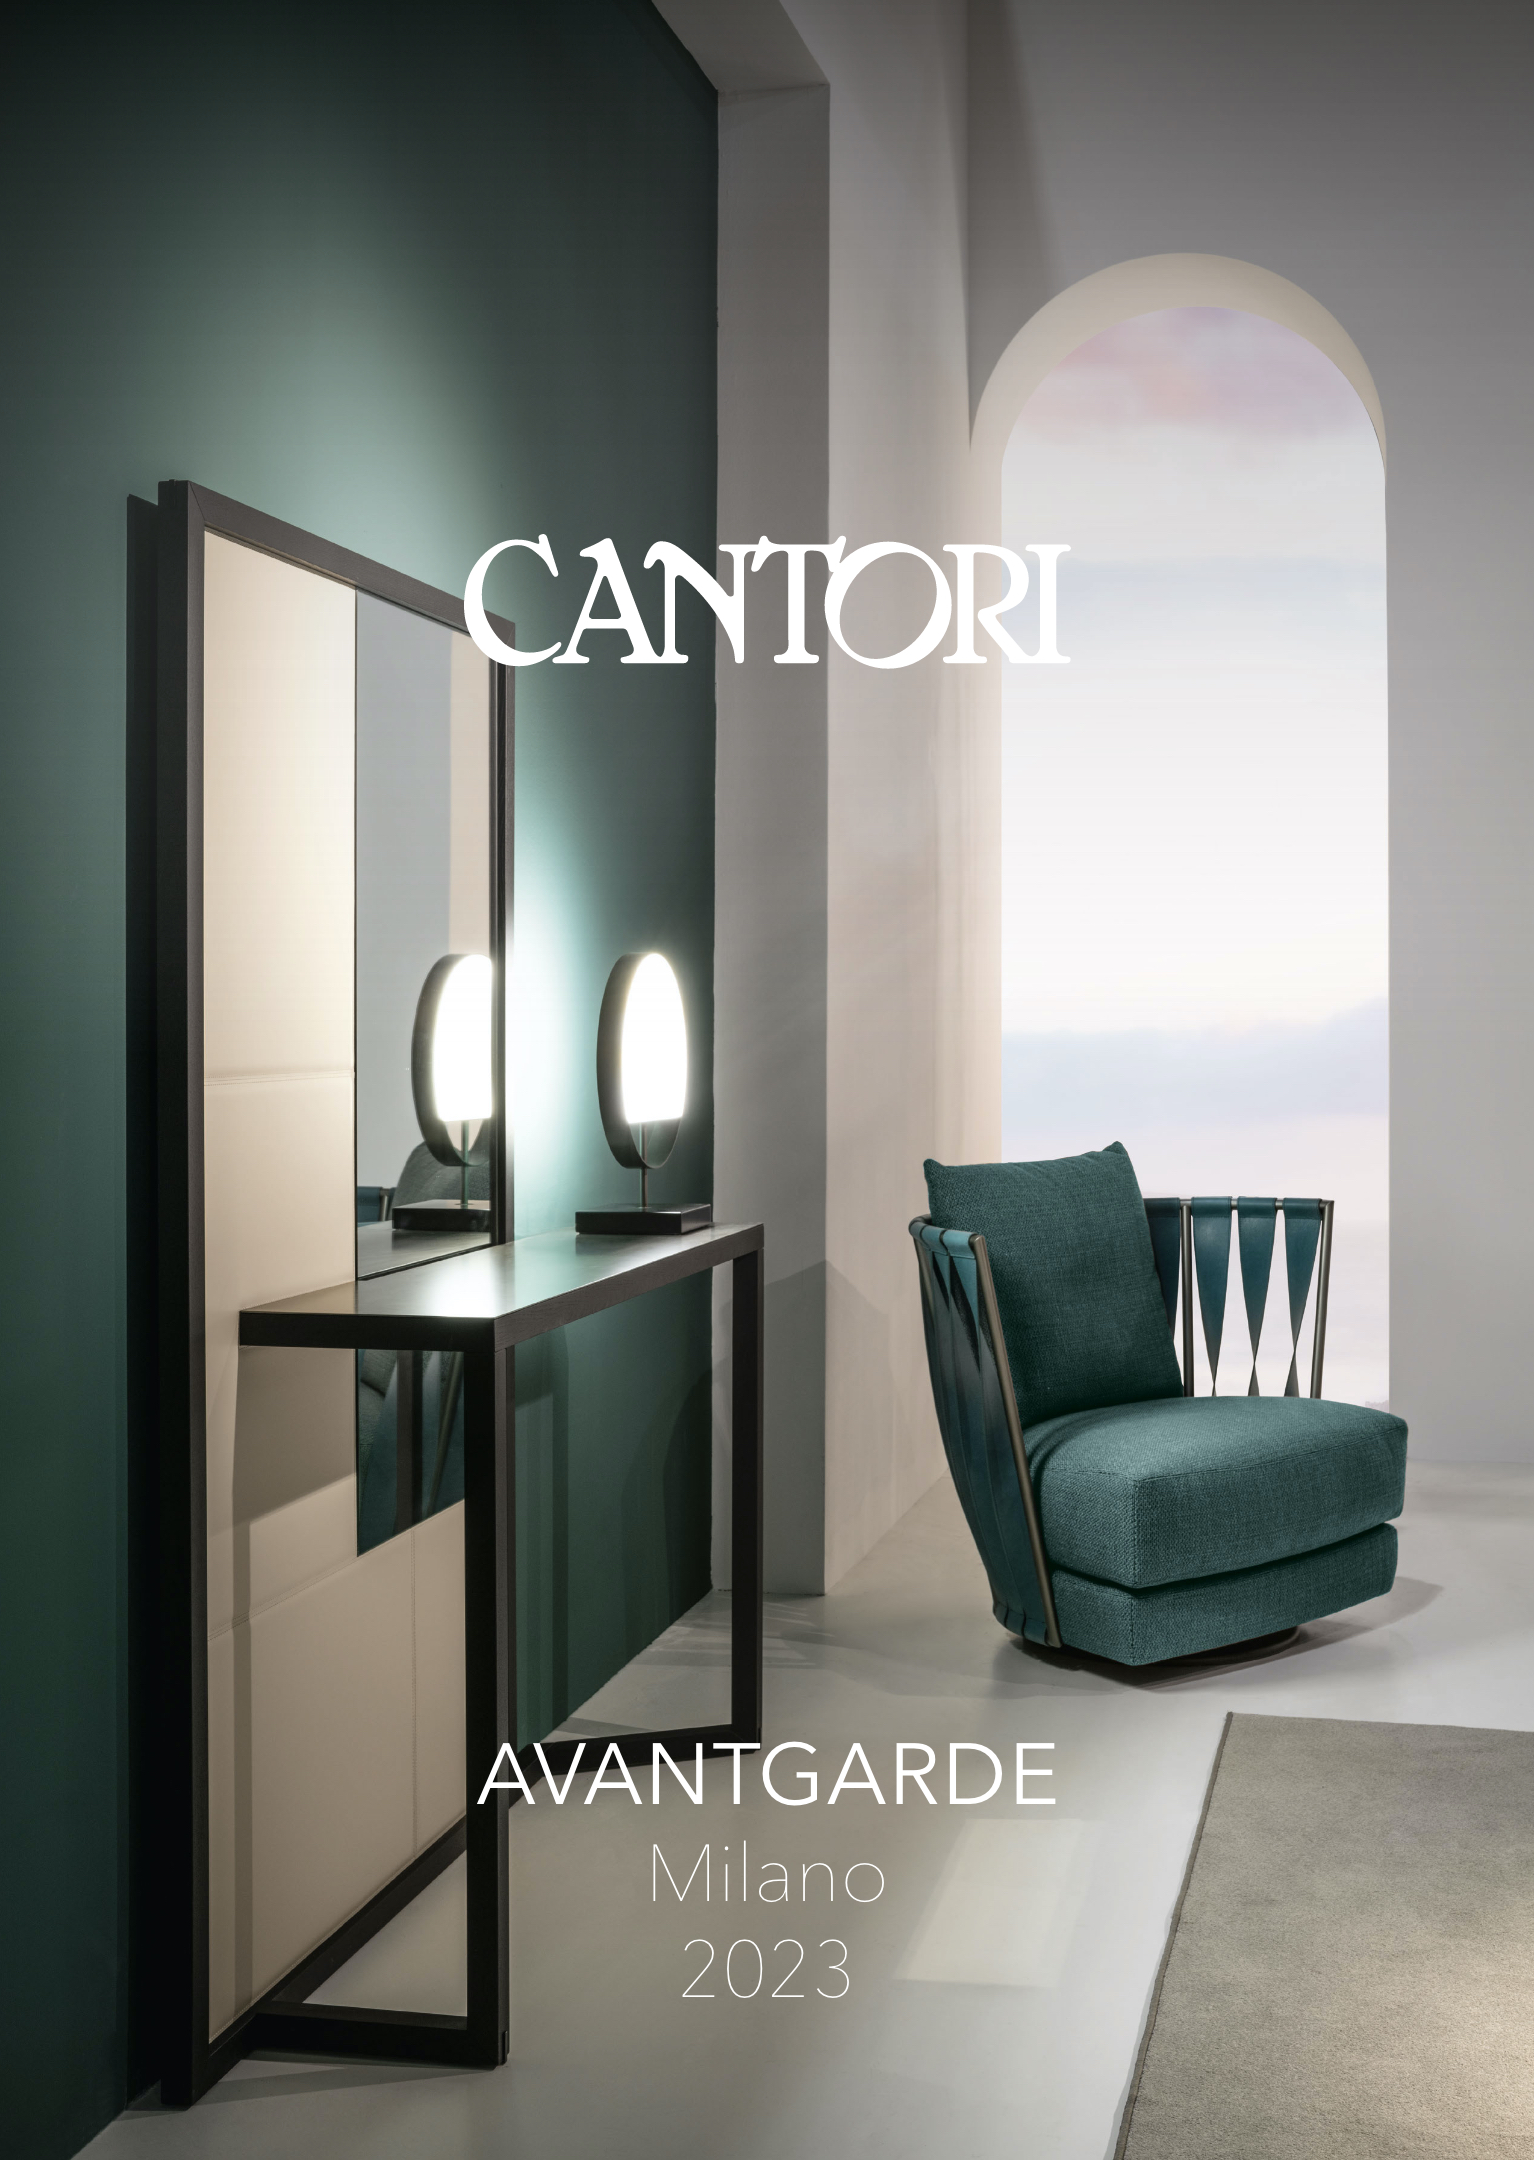 Avantgarde Milano 2023 - Cantori